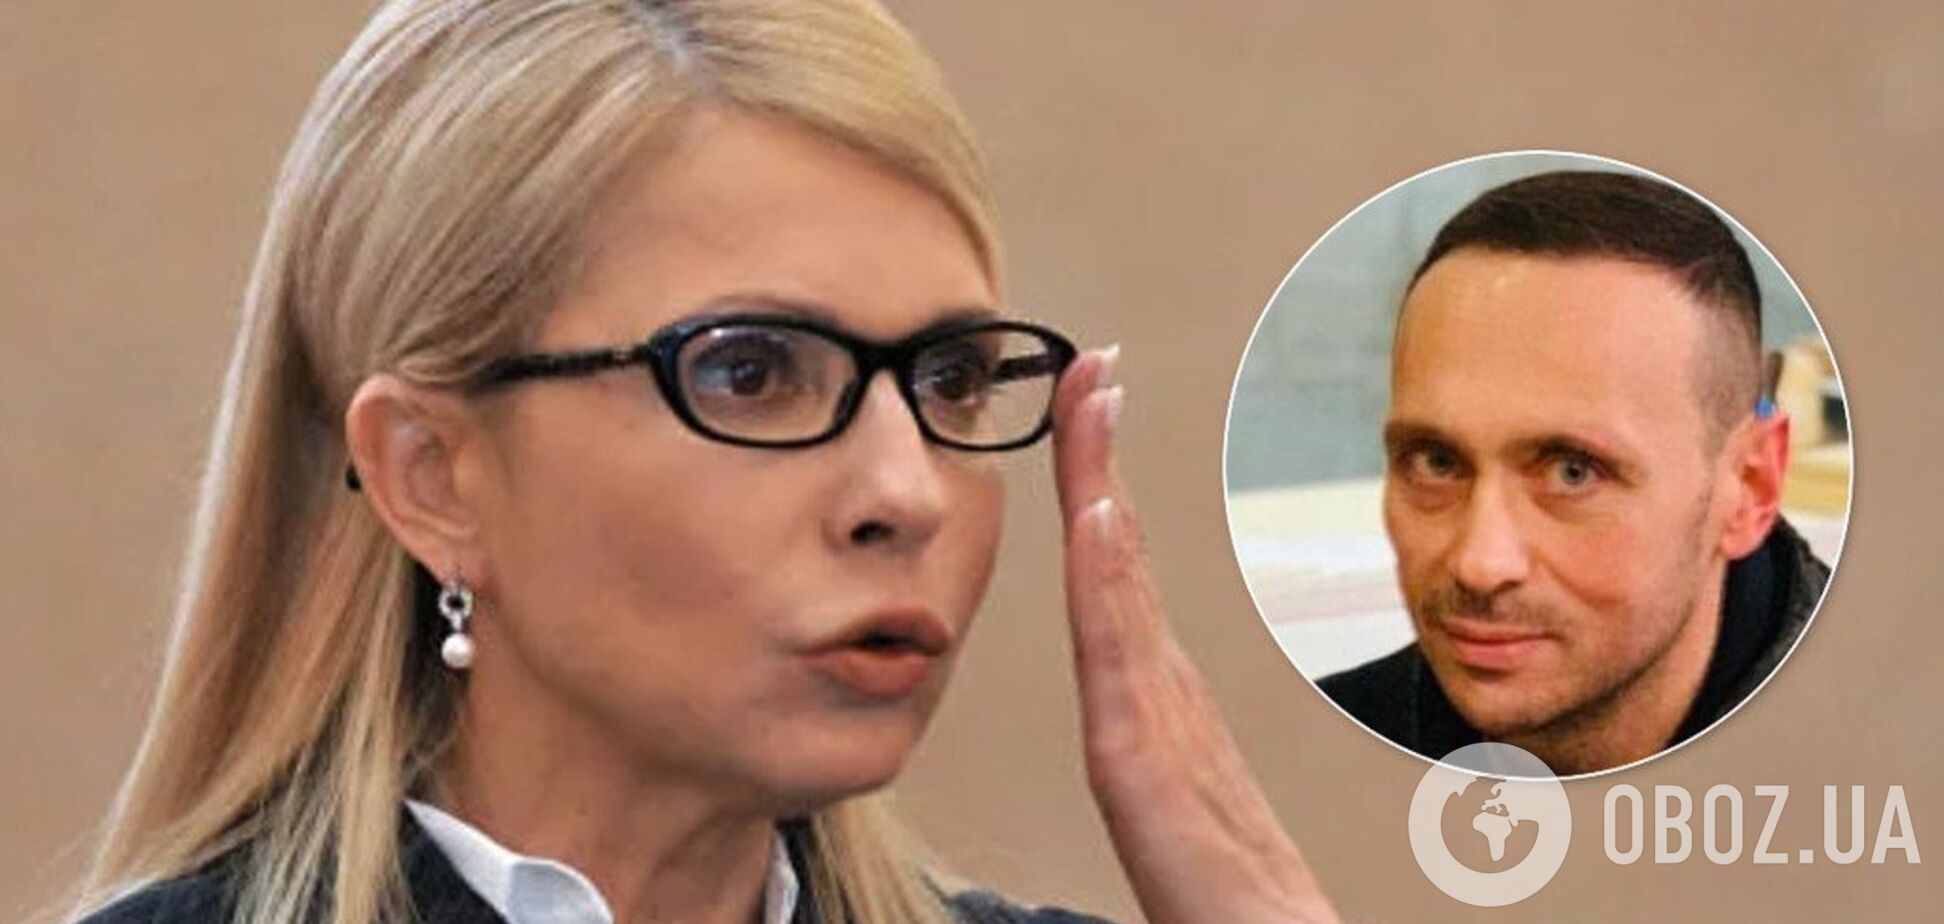 'Хороша': 'слуга народу' обговорював у Раді 'свіжу пластику' Тимошенко. Відео